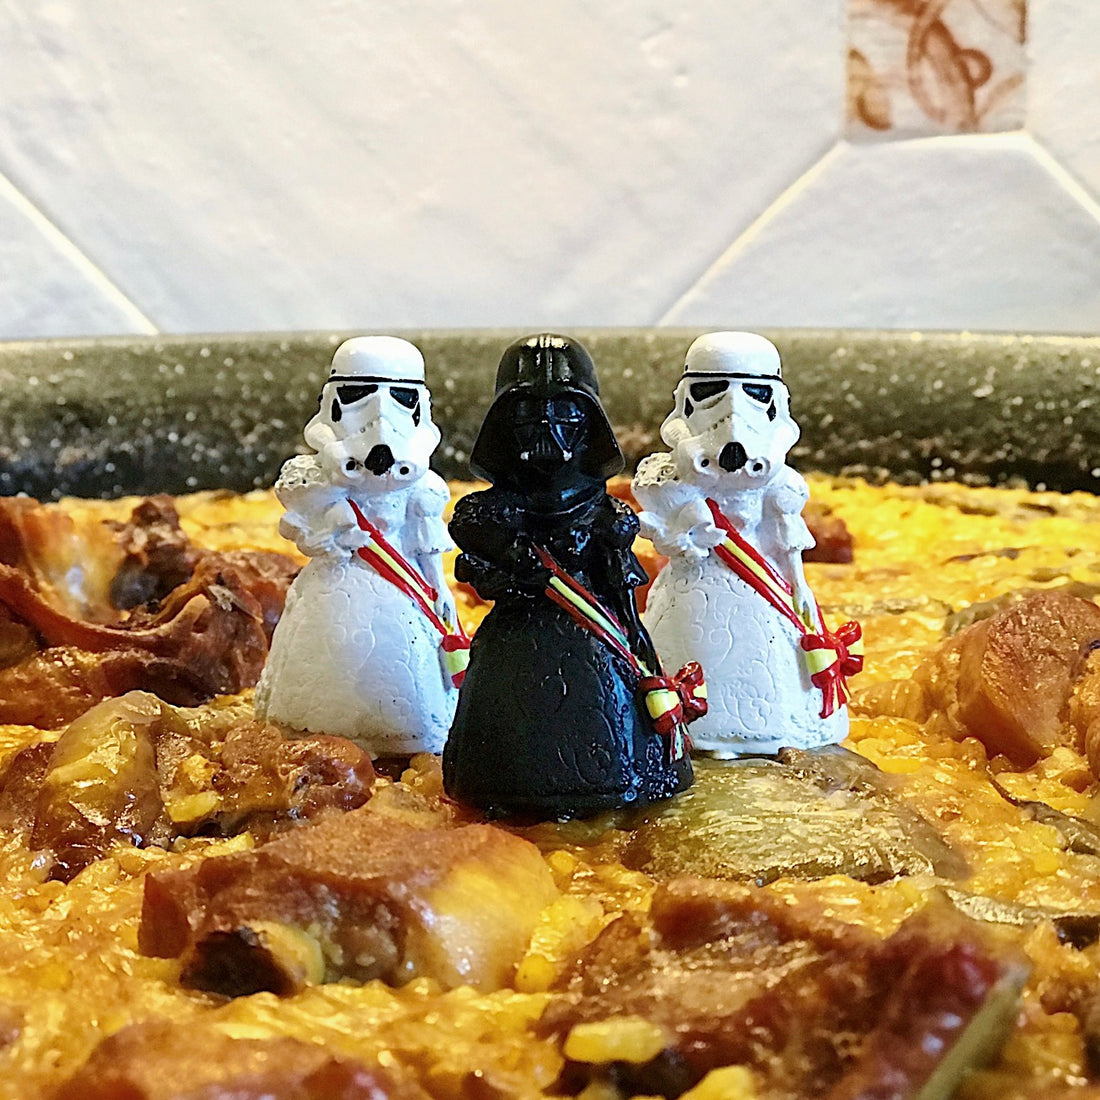 Storm trooper y Darth Vader vestidos con traje de paella encima de una paella